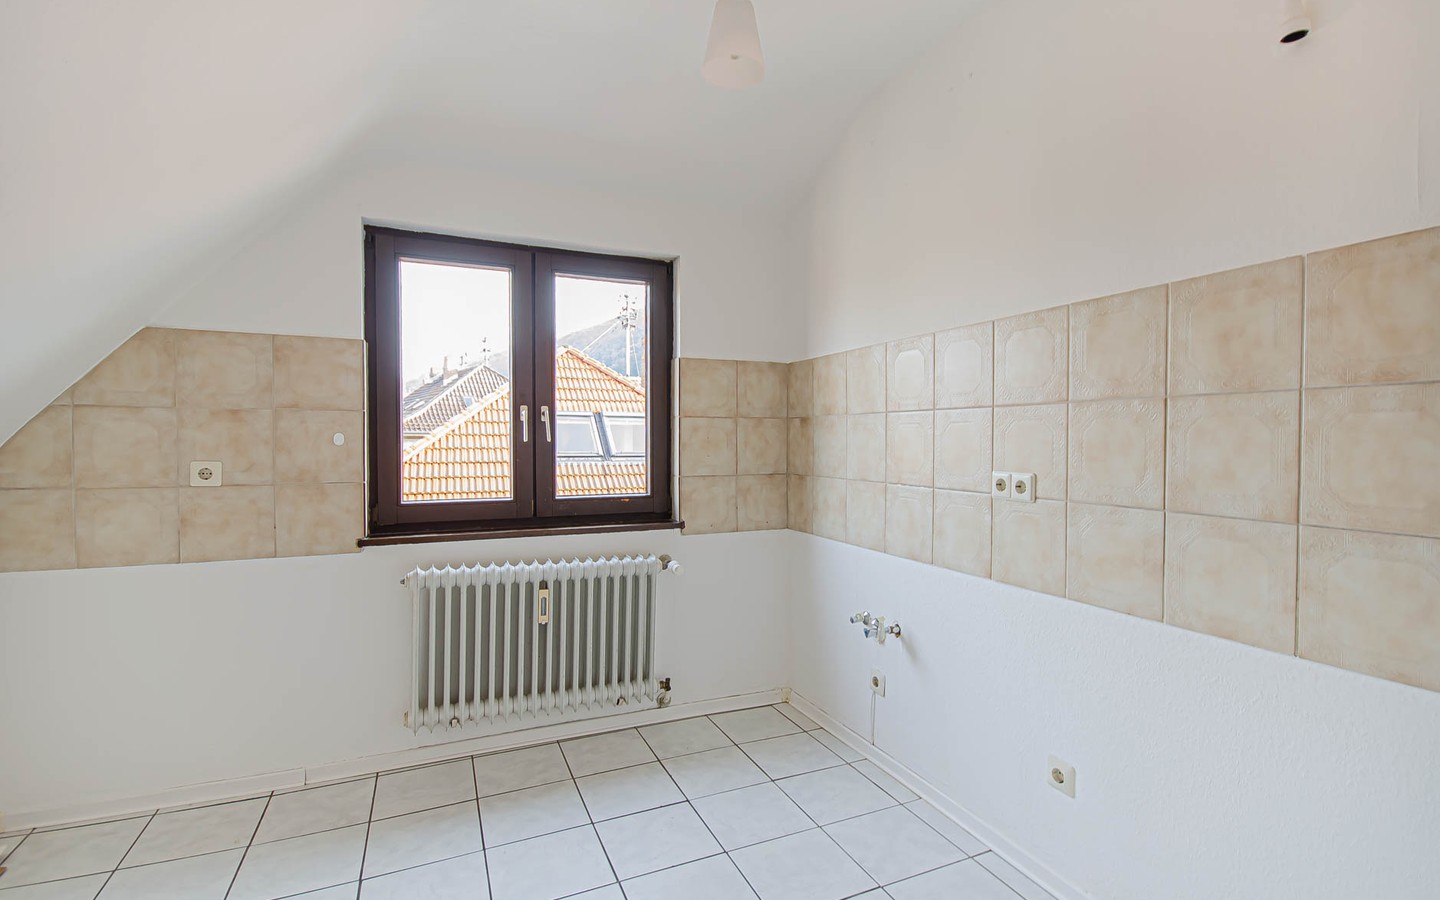 Küche - Offene und helle Maisonettewohnung in zentraler Lage in Heidelberg-Rohrbach